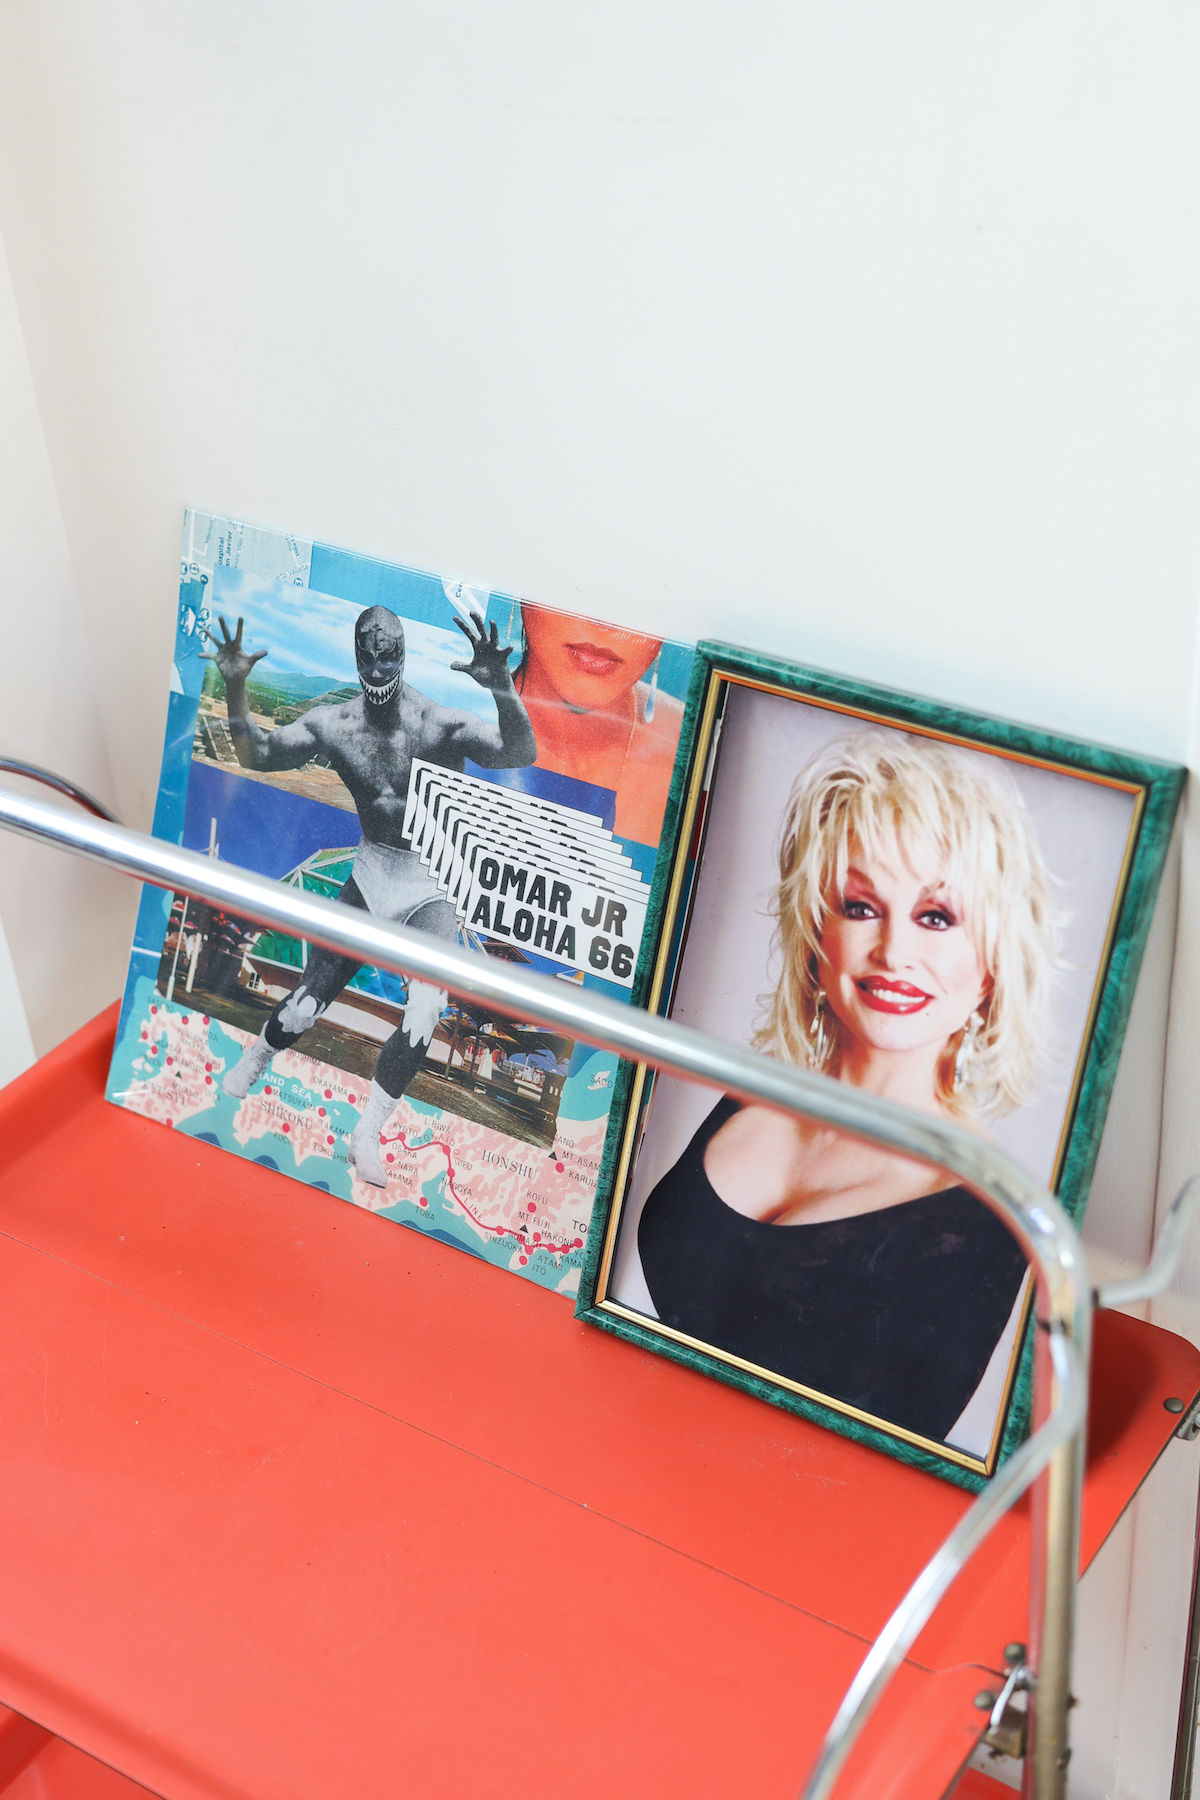 Cadre de Dolly Parton à côté d'un vinyle d'Omar JR "Aloha 66" sur une deserte vintage orange